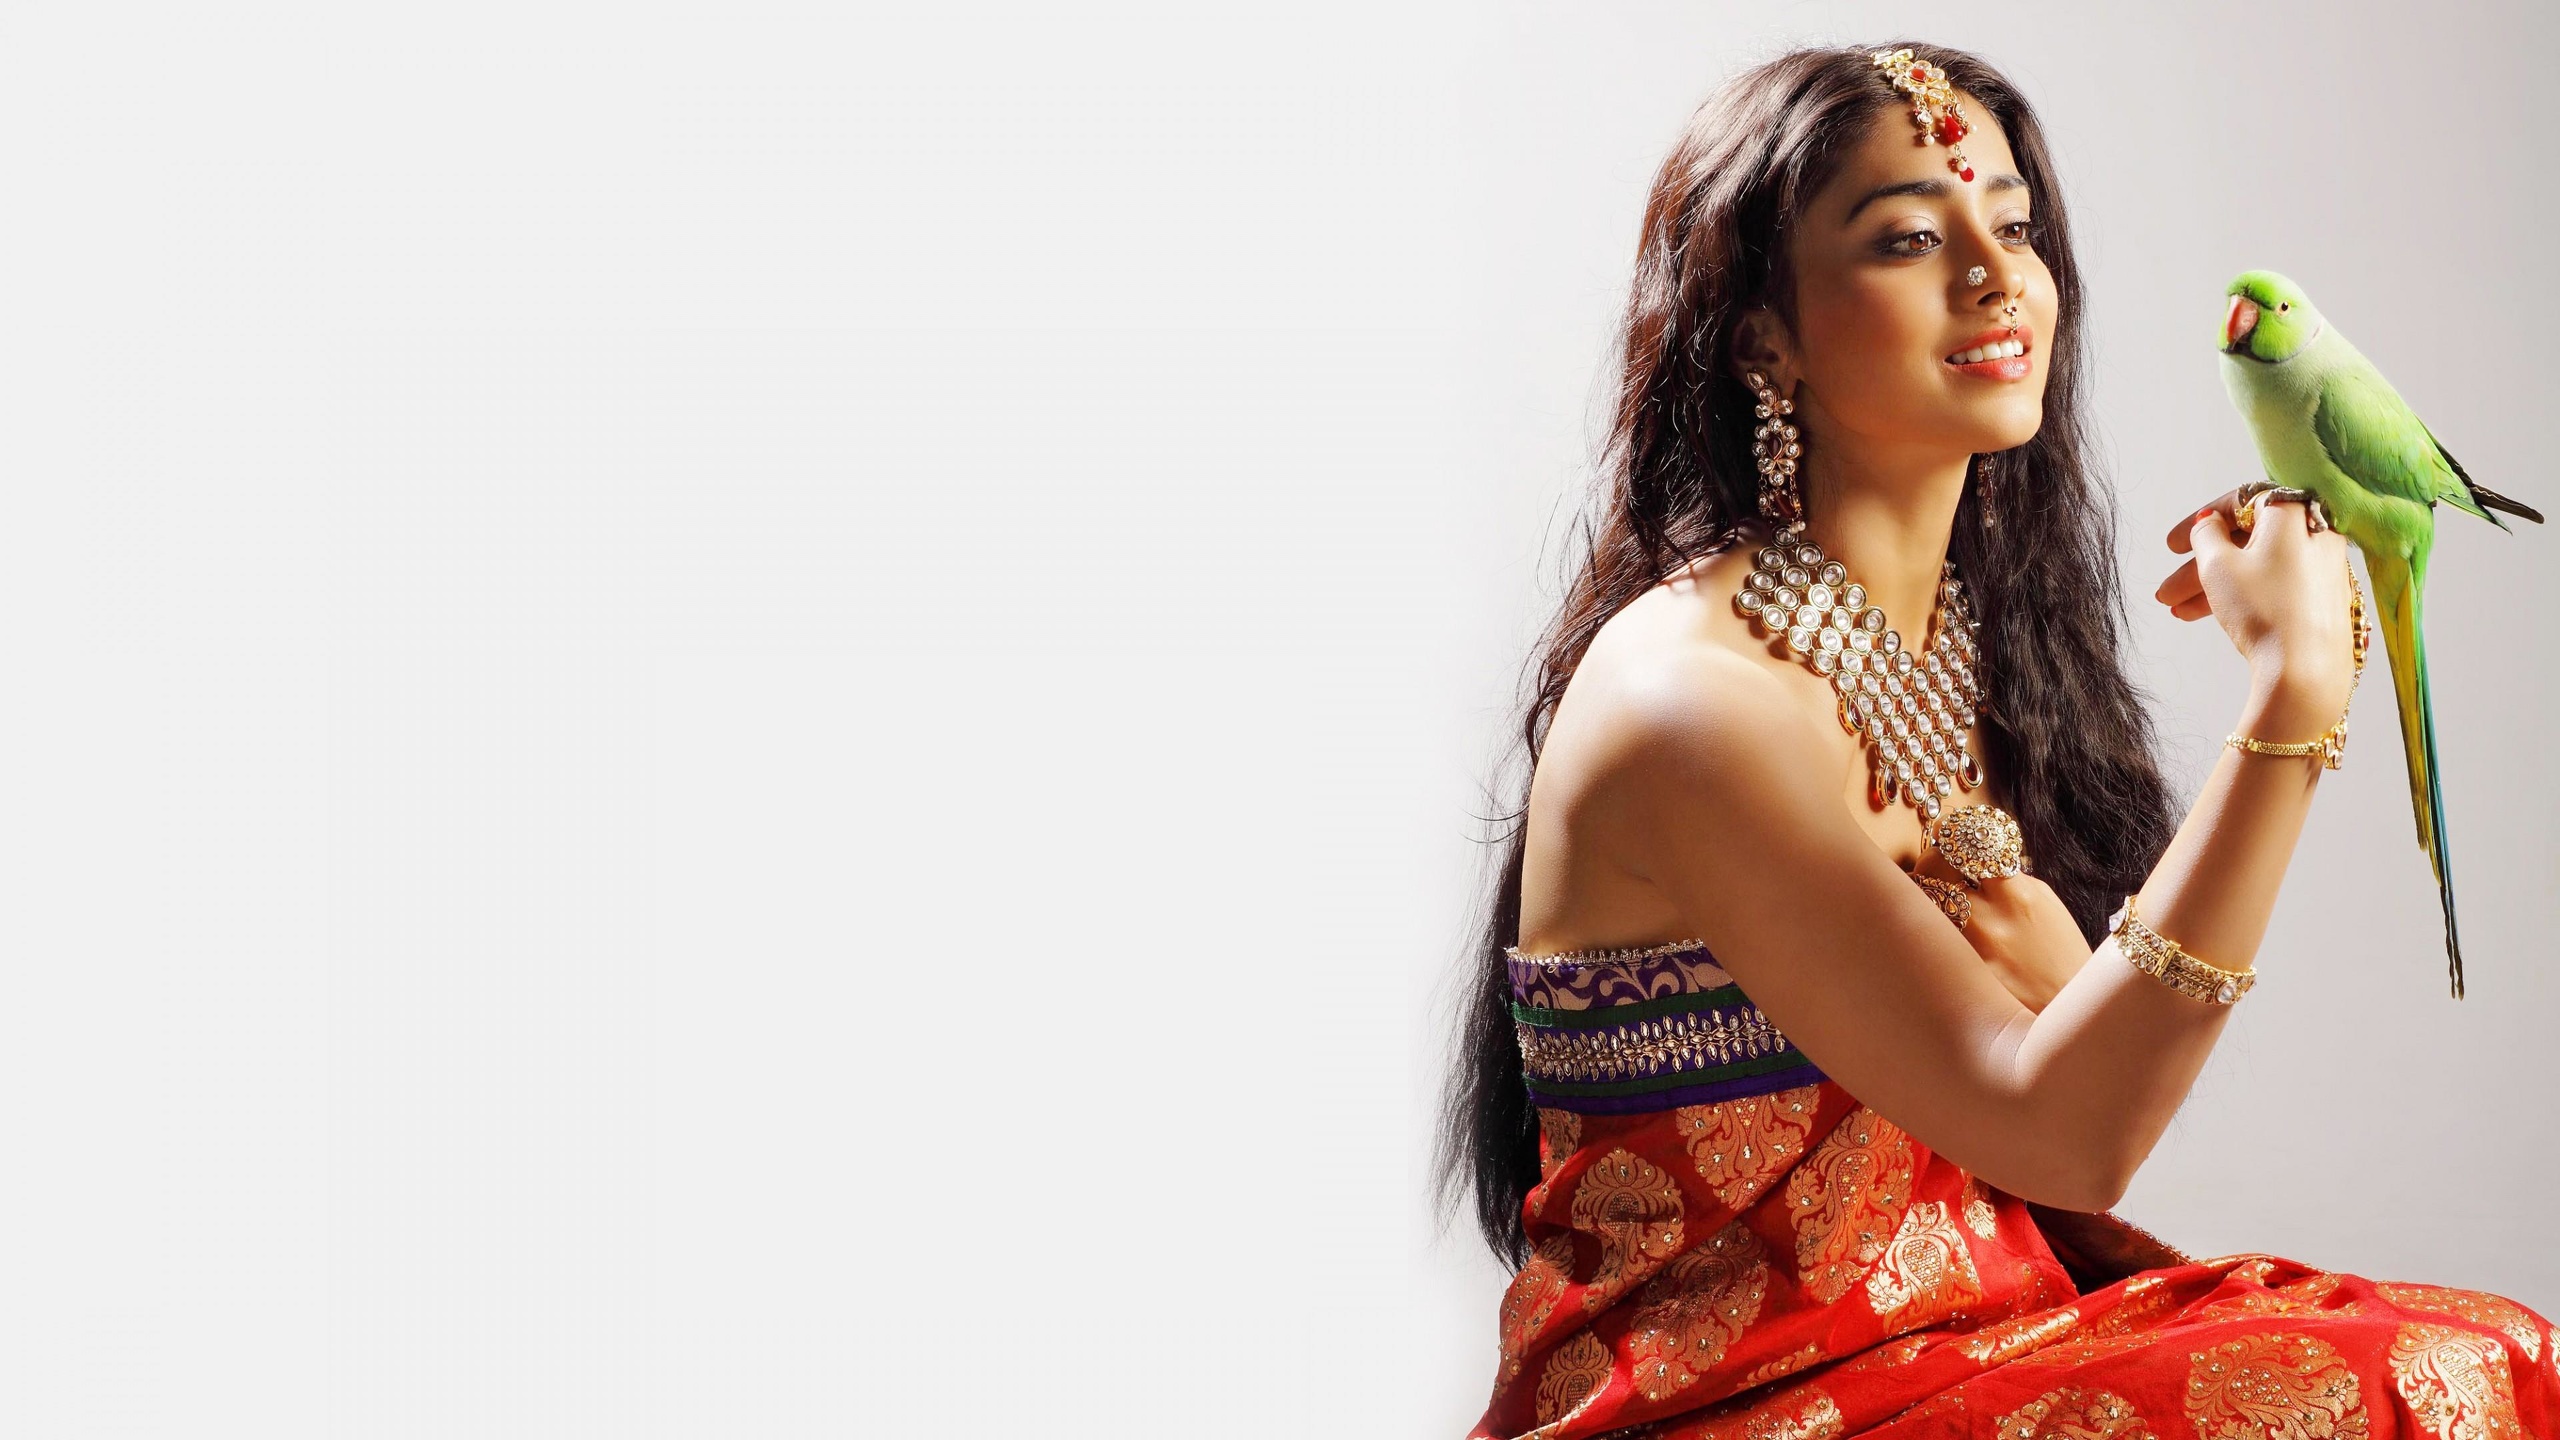 Femme indienne en habits traditionnels avec un perroquet